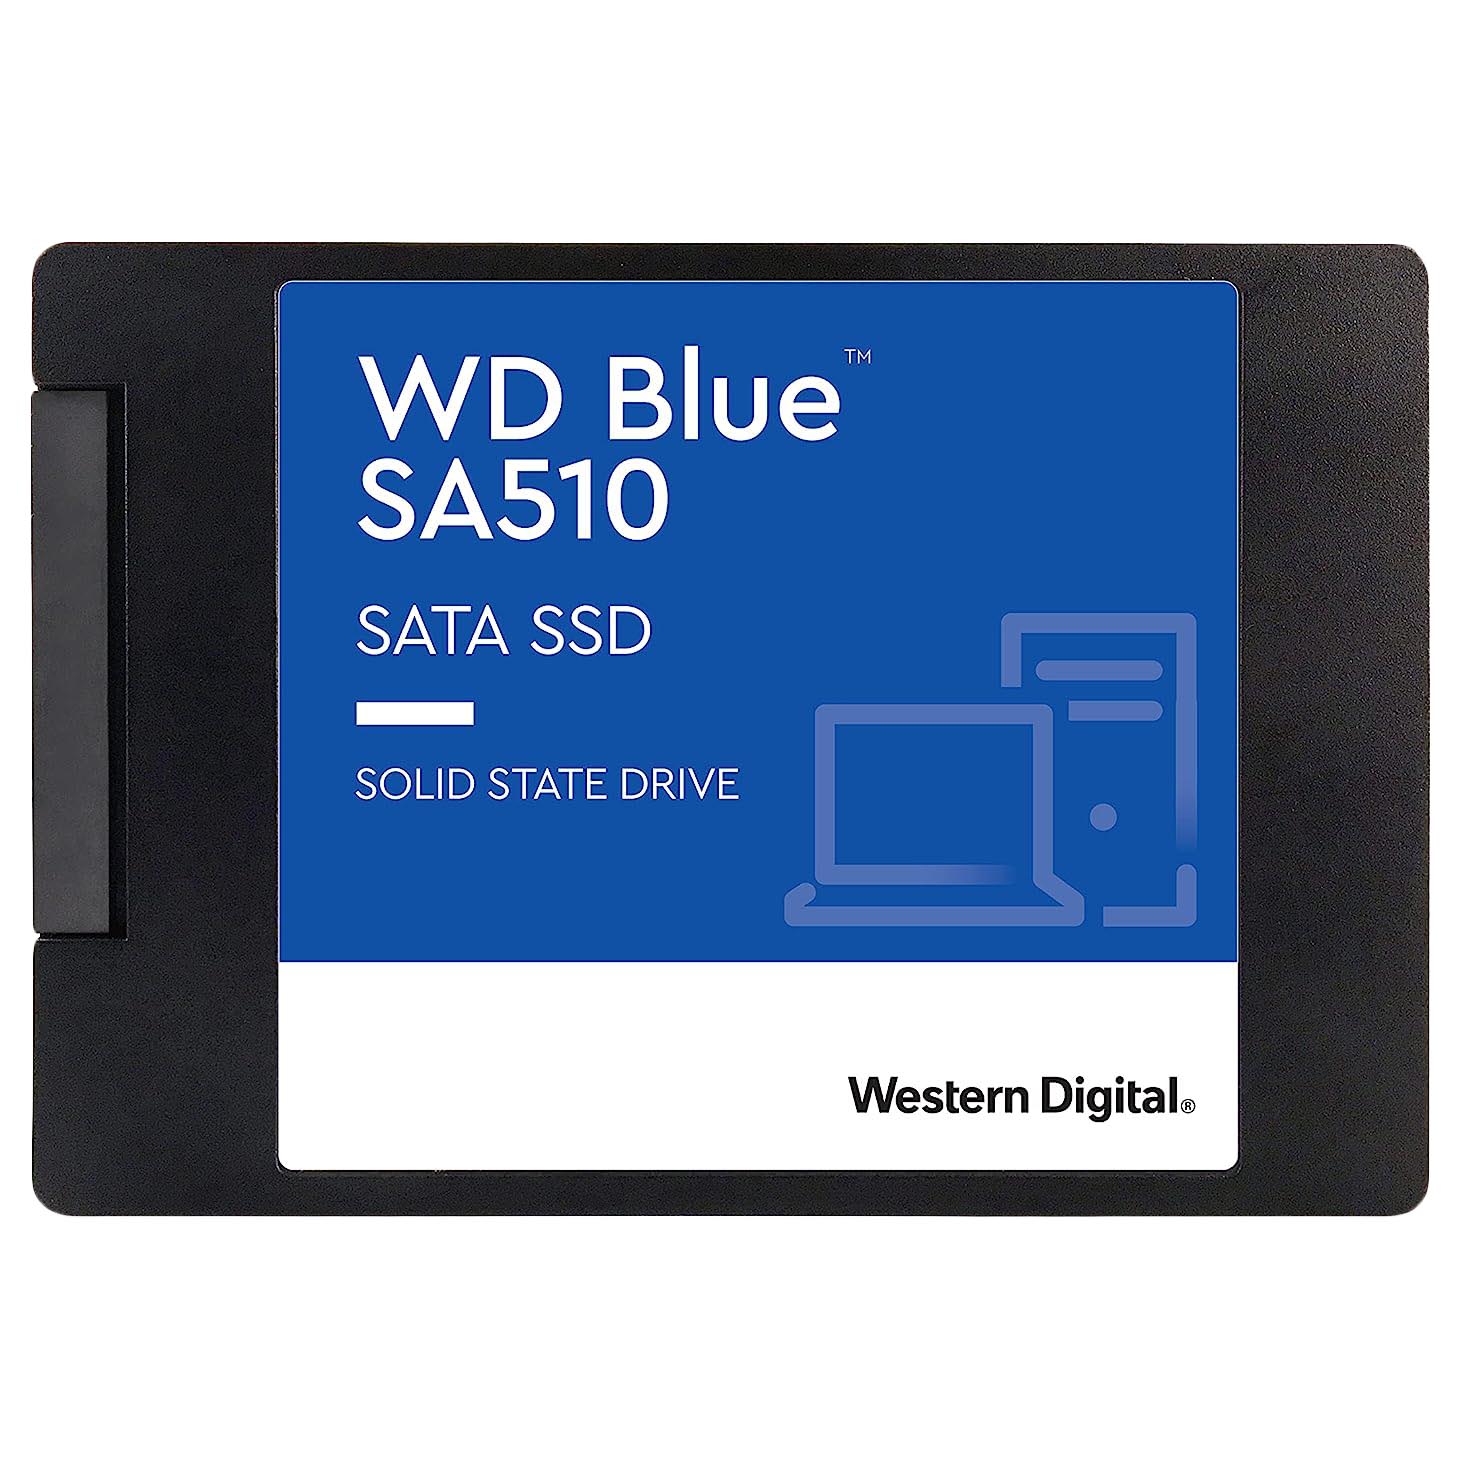 твердотельный накопитель western digital wd blue 250 гб sata wds250g3b0a Внутренний твердотельный накопитель Western Digital WD Blue SA510, WDS250G3B0A, 250Гб, 2,5